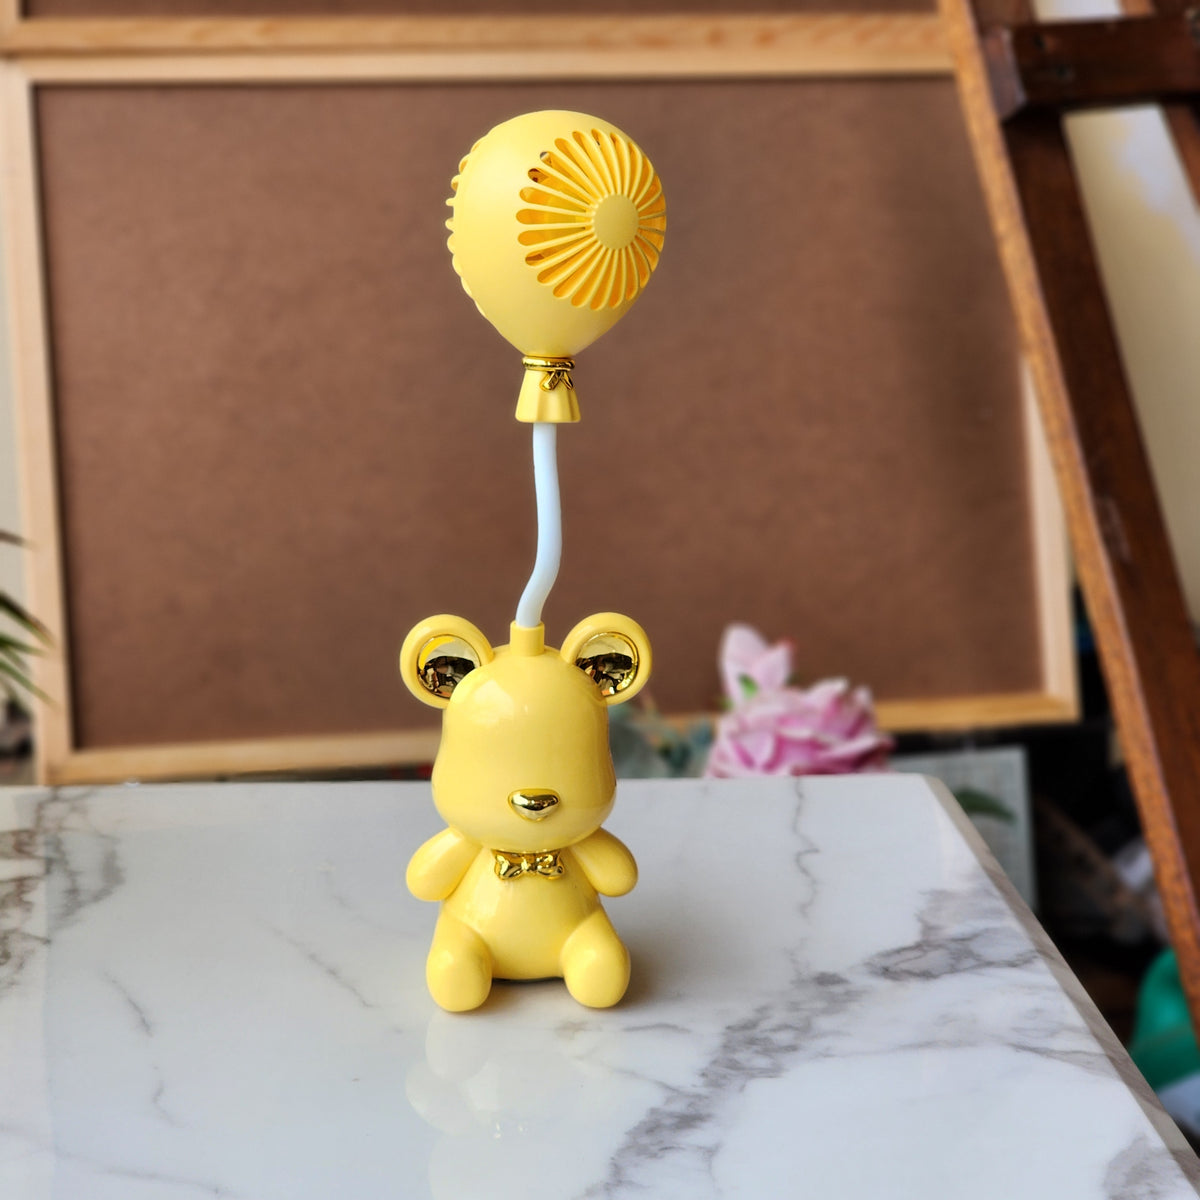 Cute bear mini fan